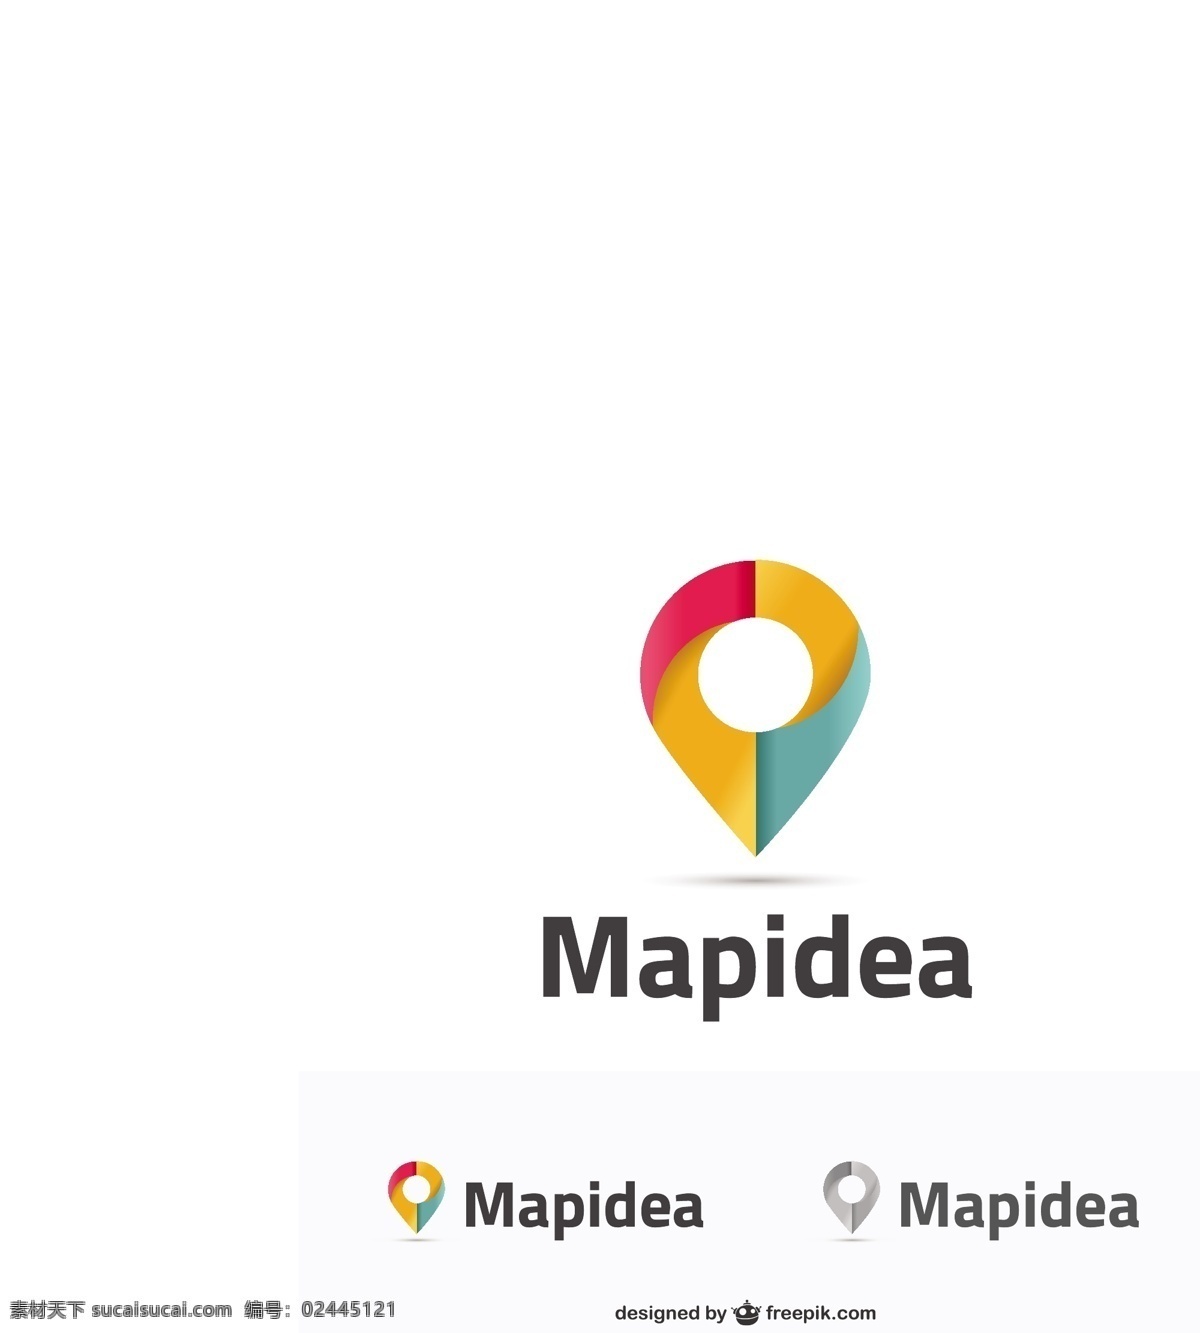 企业 logo logo设计 红色 黄色 绿色 图标 矢量 矢量图